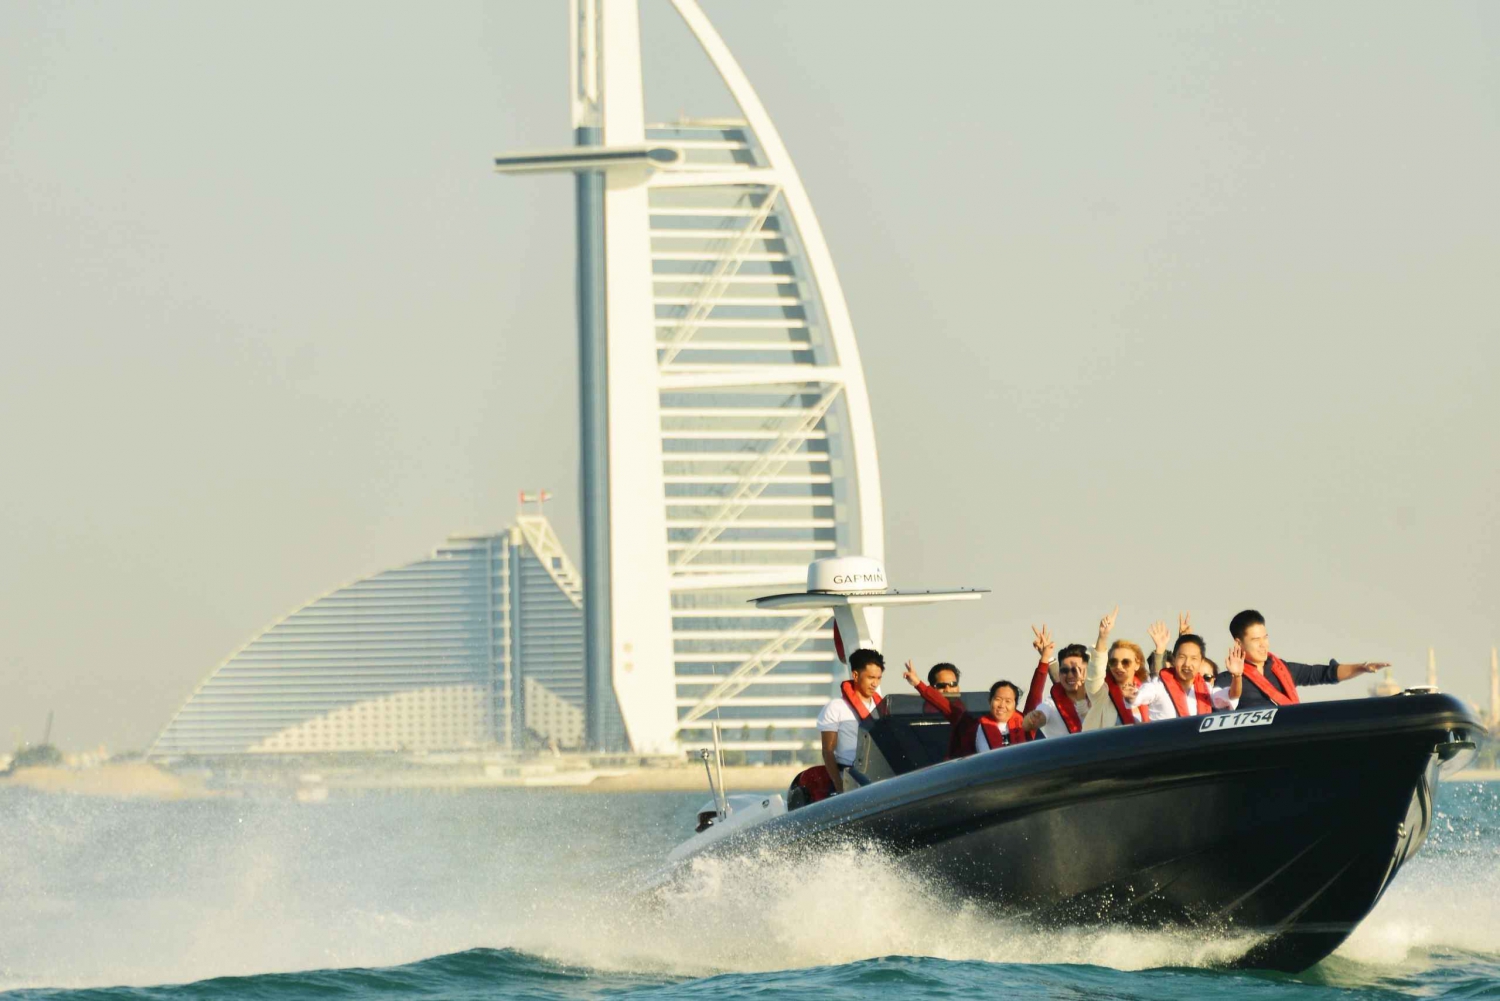 Dubaï : Croisière touristique sur la marina avec commentaires et eau